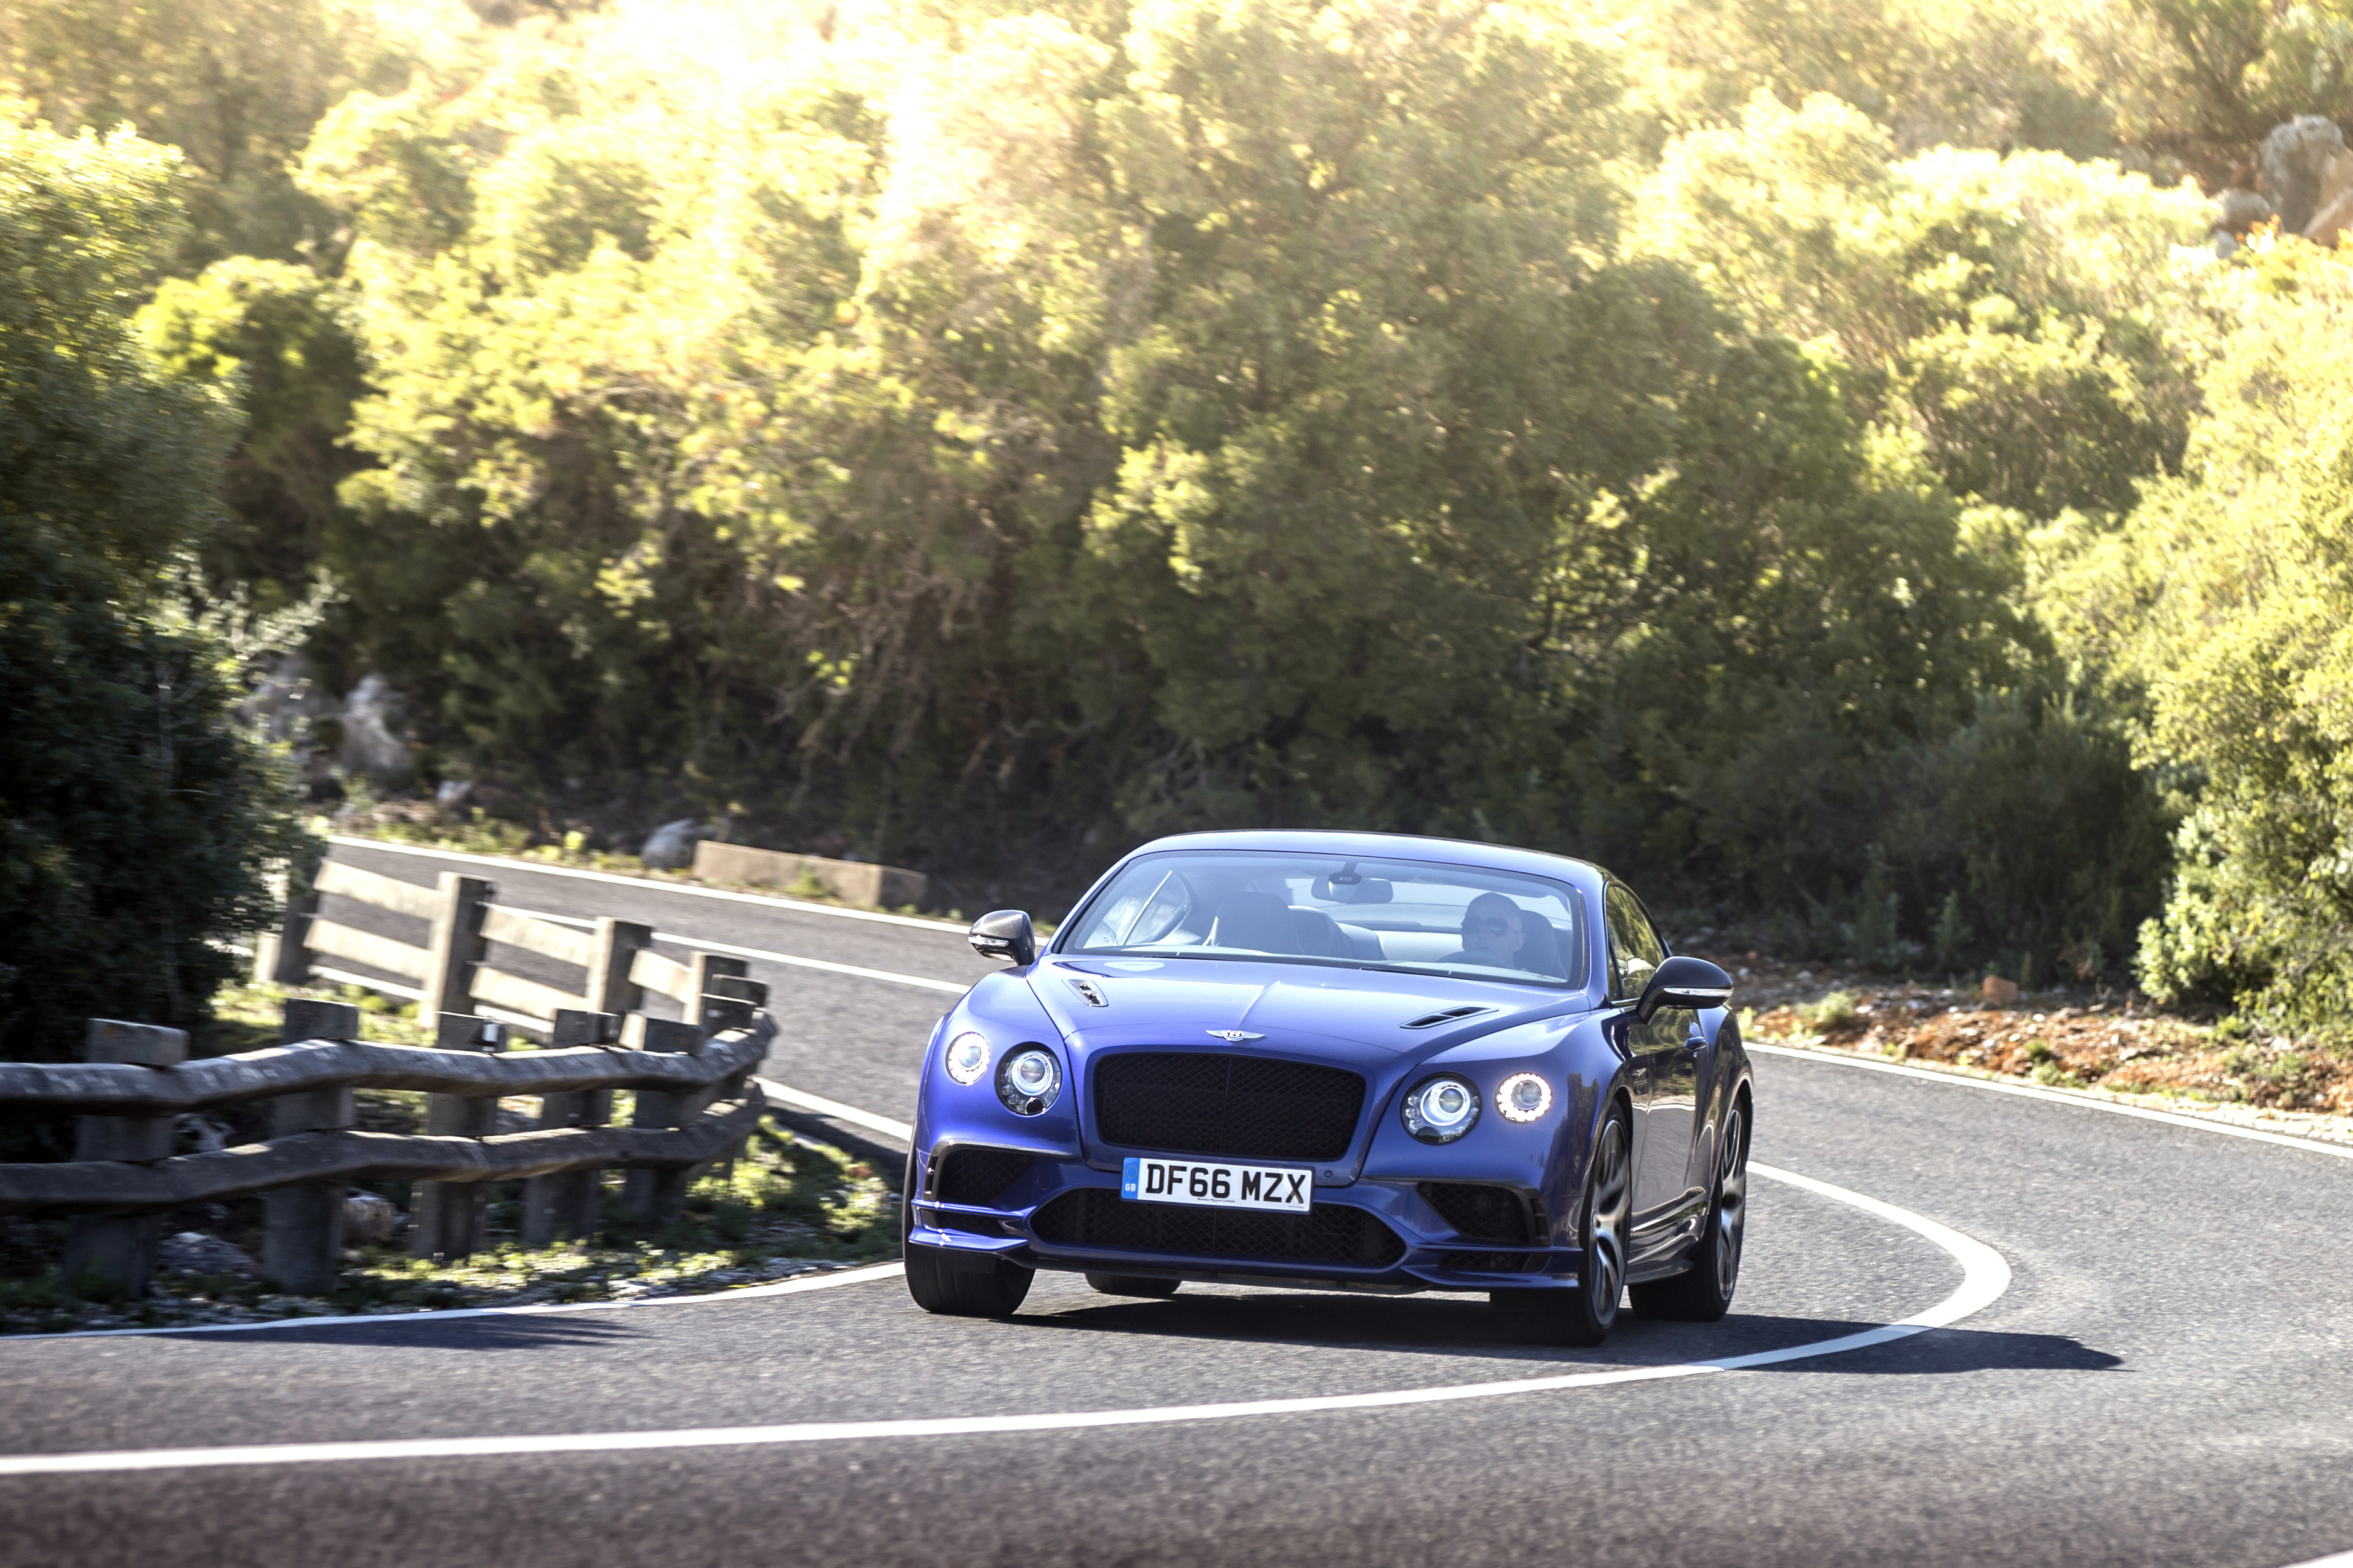 Фотографии Bentley continental gt supersport 2018 Синий Дороги едущий Спереди Автомобили 3743x2495 Бентли синяя синие синих едет едущая Движение скорость авто машины машина автомобиль